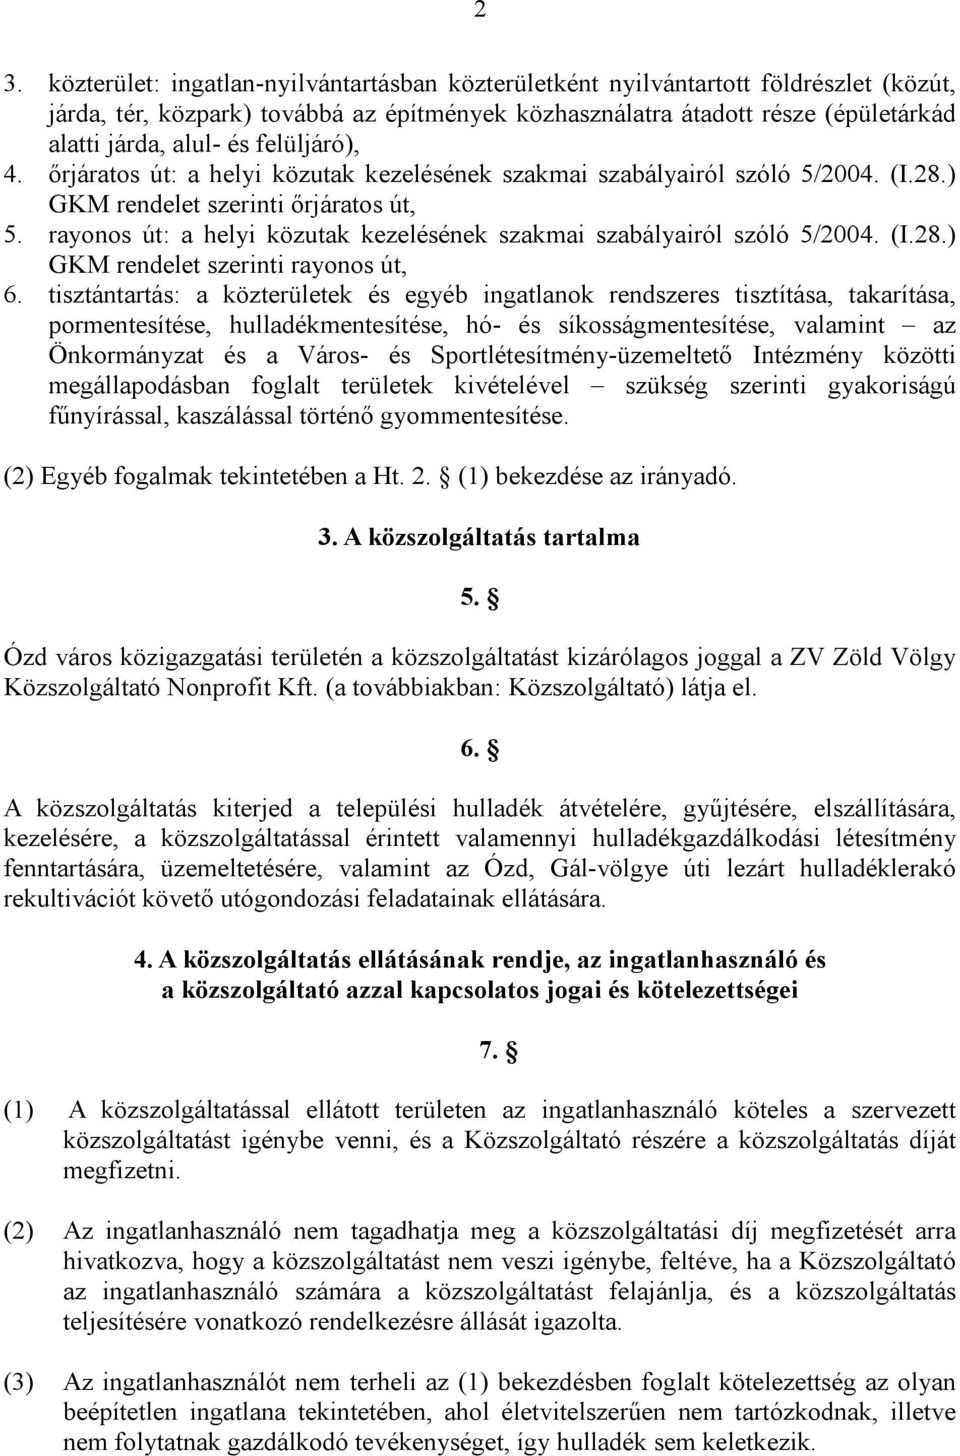 rayonos út: a helyi közutak kezelésének szakmai szabályairól szóló 5/2004. (I.28.) GKM rendelet szerinti rayonos út, 6.